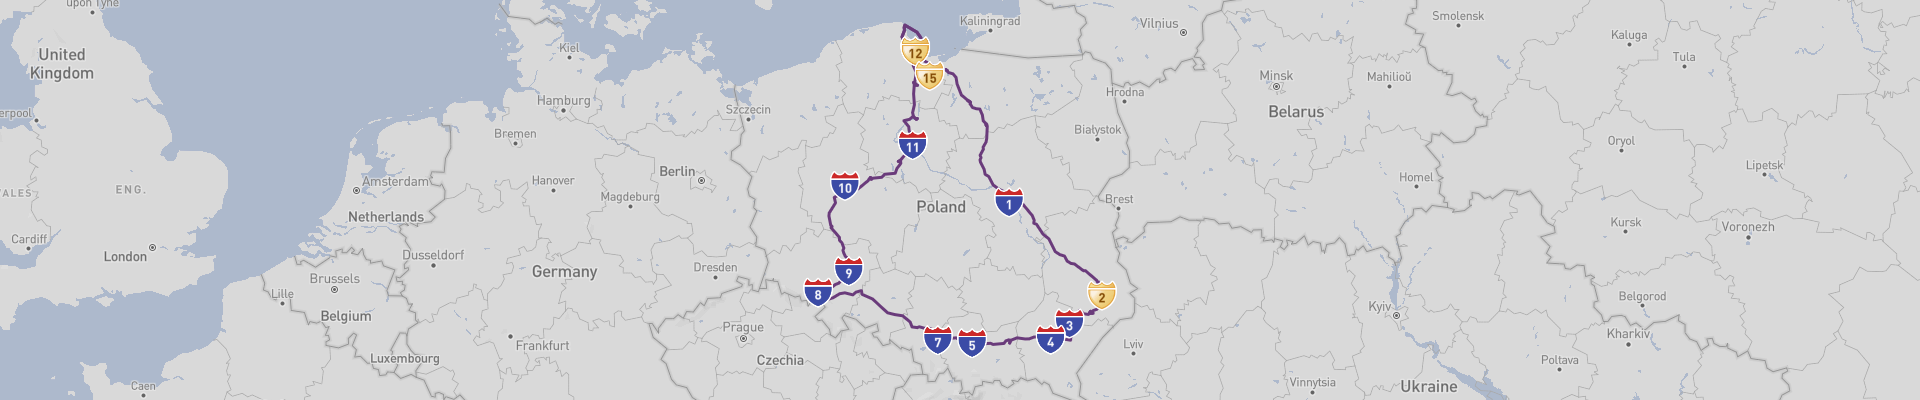 Poland Road Trip